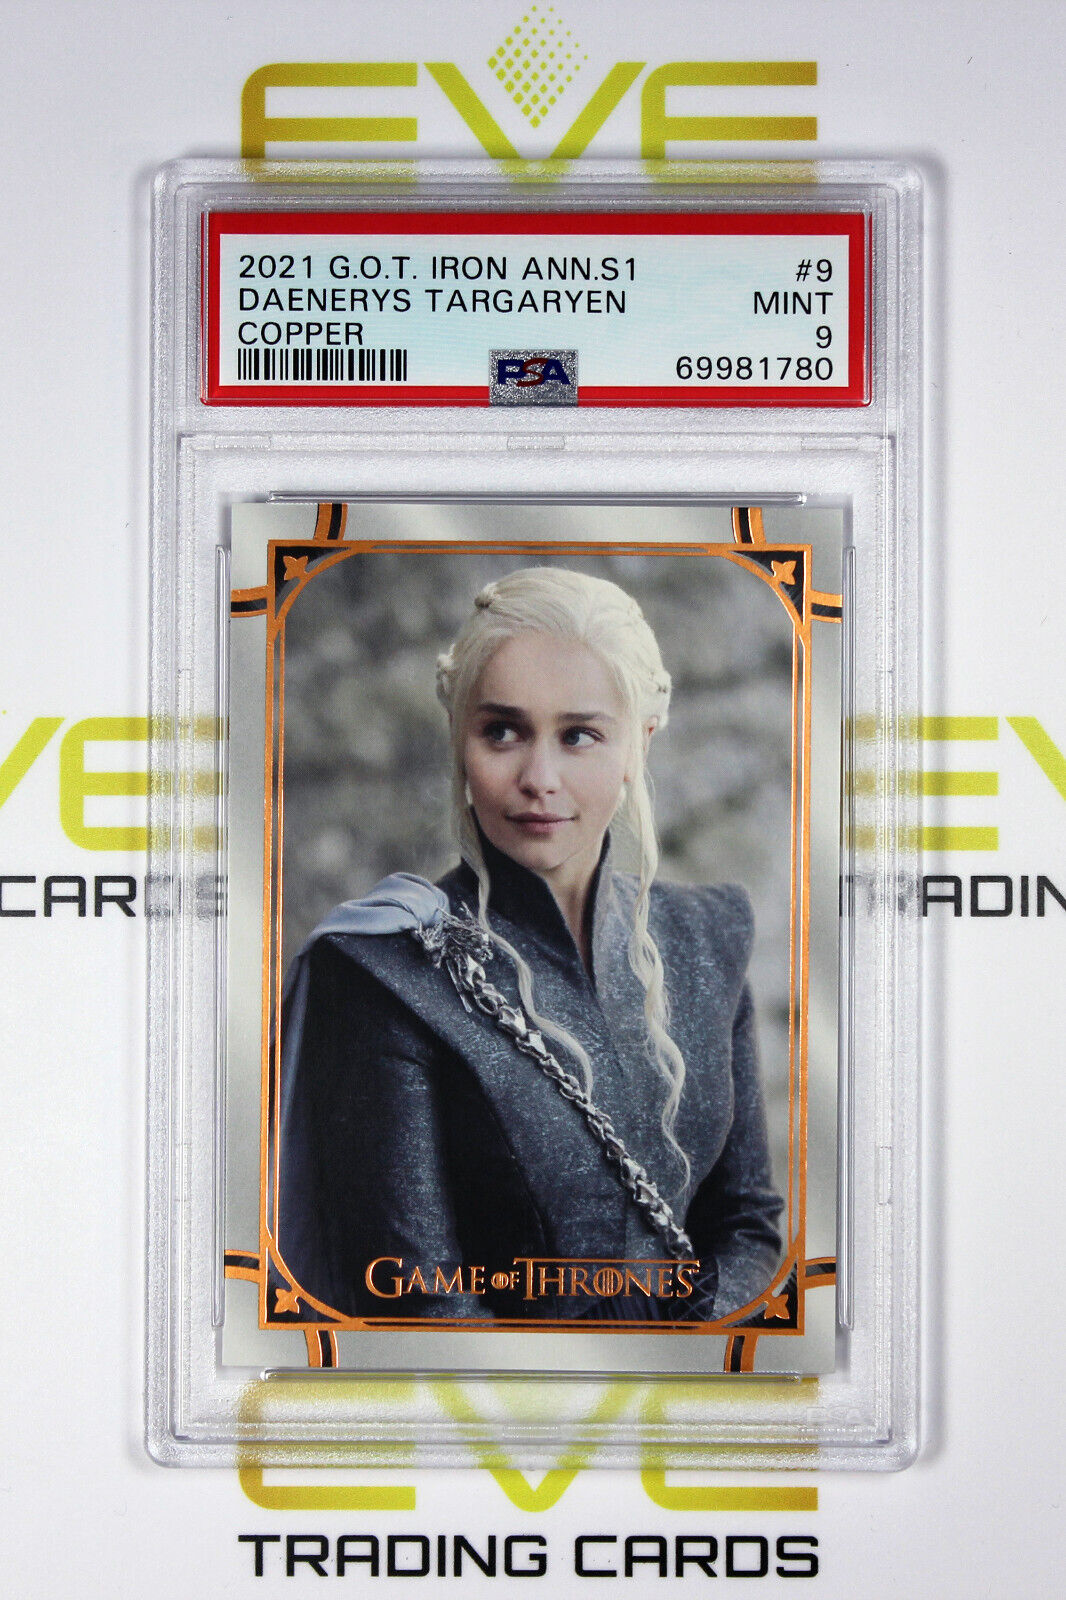 Graded Game of Thrones Card - #9 2021 Daenerys Targaryen - Copper /199 - PSA 9